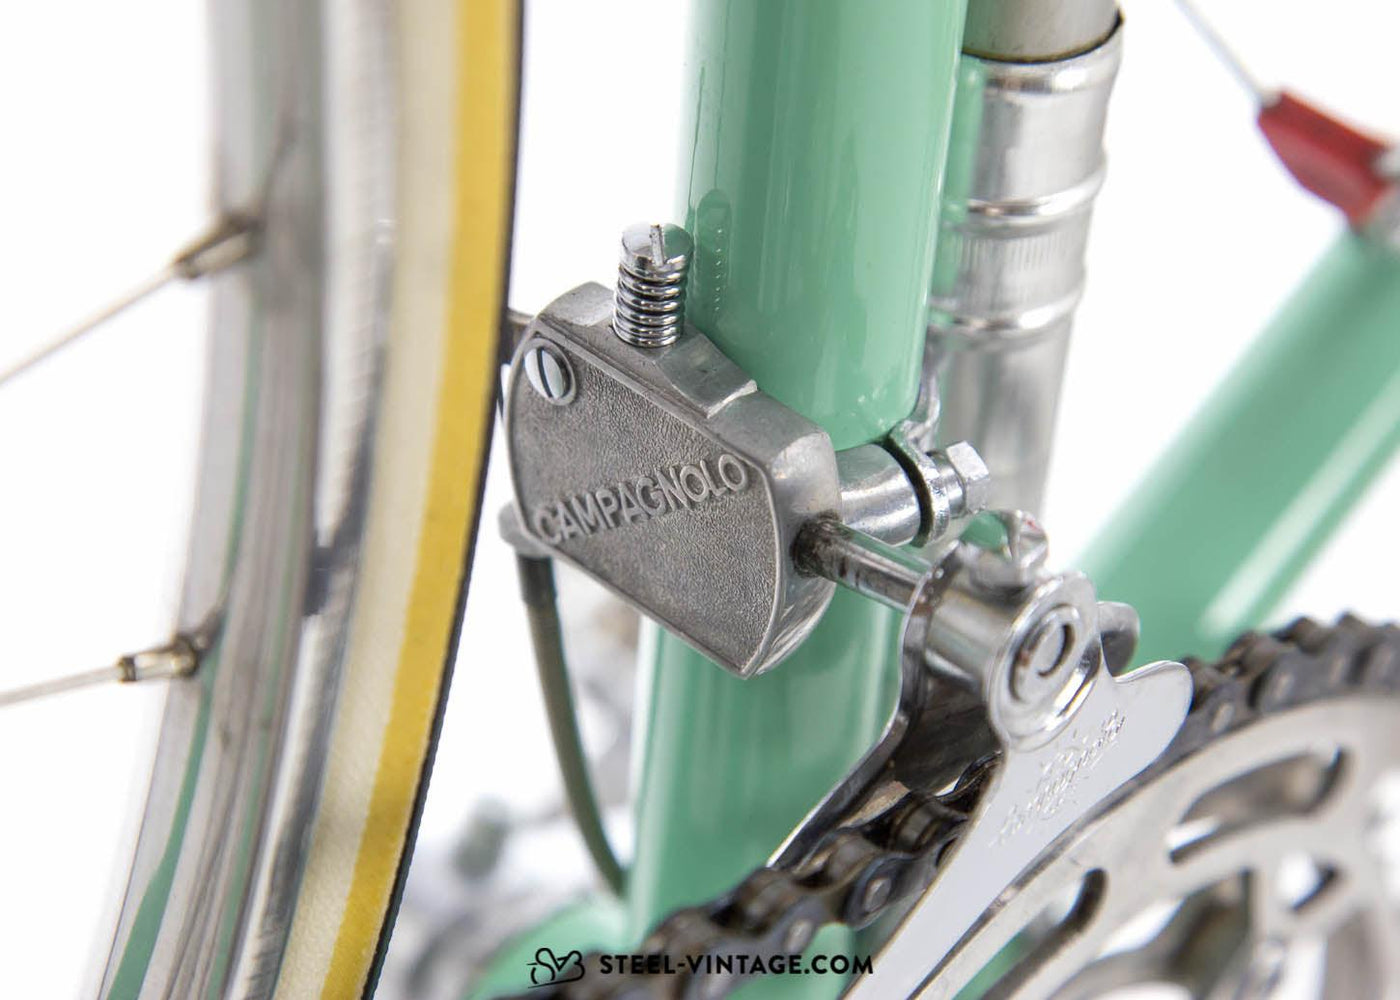 Bianchi Campione del Mondo Classic Road Bike 1950s - Steel Vintage Bikes